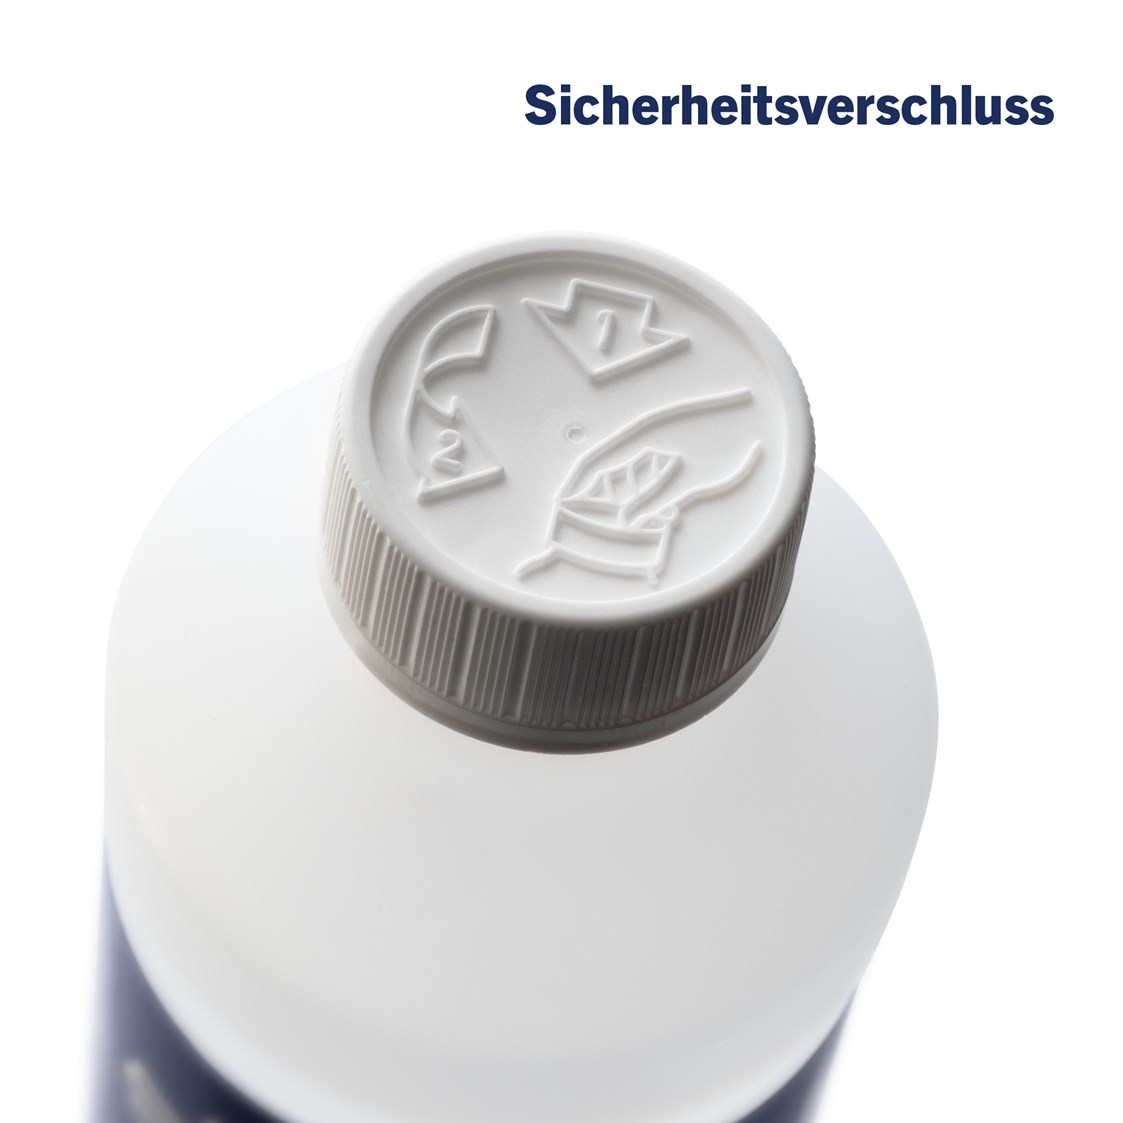 Unternehmen: Bei allen unseren Desinfektionsmitteln außer der 100 ml Version für Unterwegs. - Desinfektionsmittel von Batimat aus Salzburg